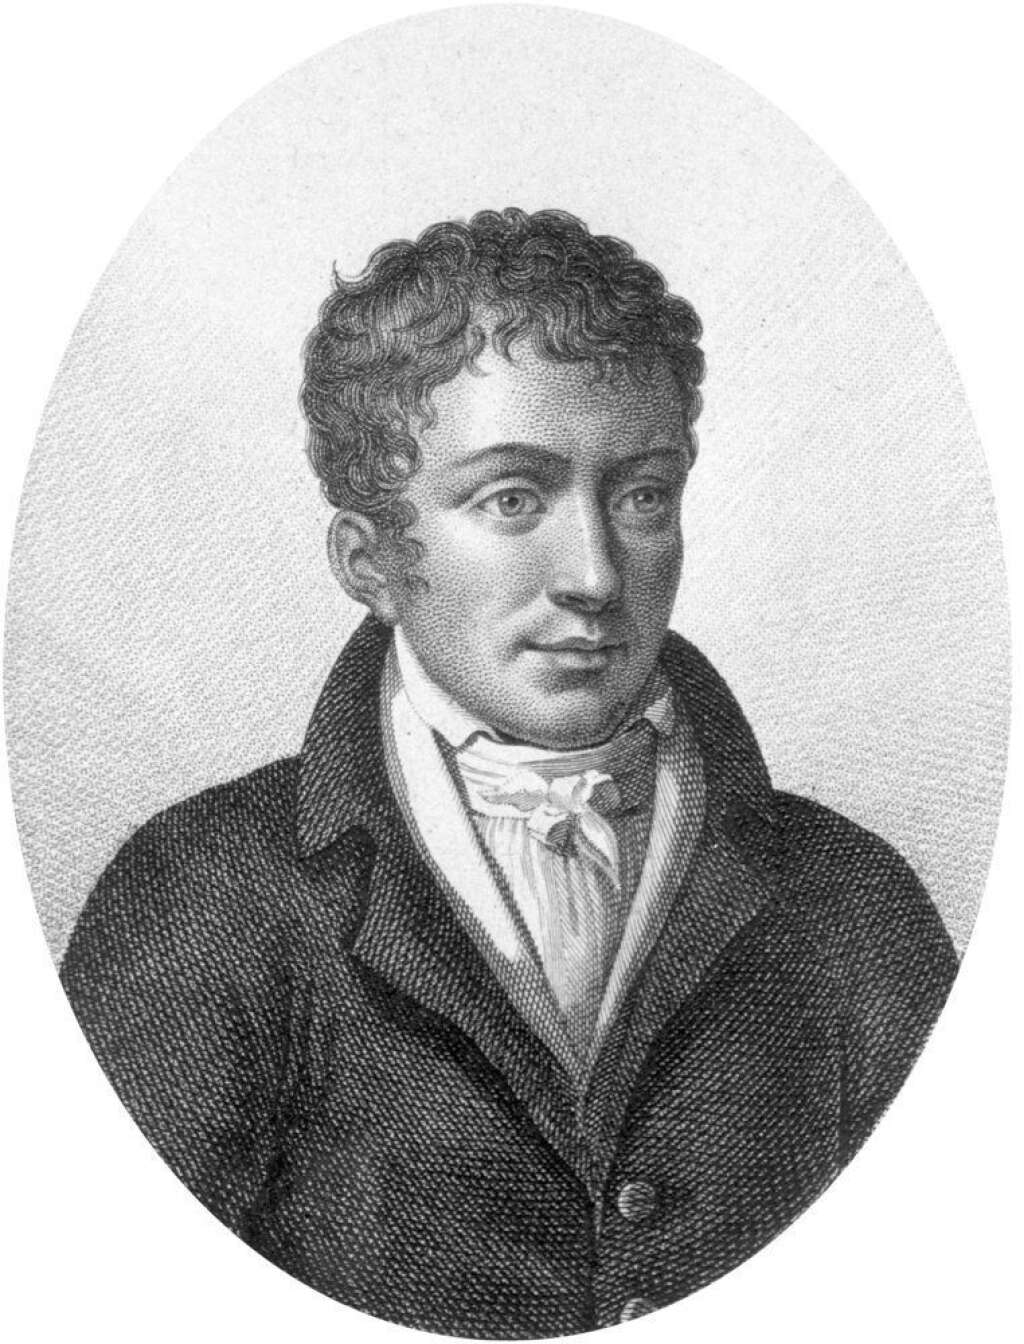 Pierre-Jean-Georges Cabanis (inhumé en 1808) - Philosophe et médecin.